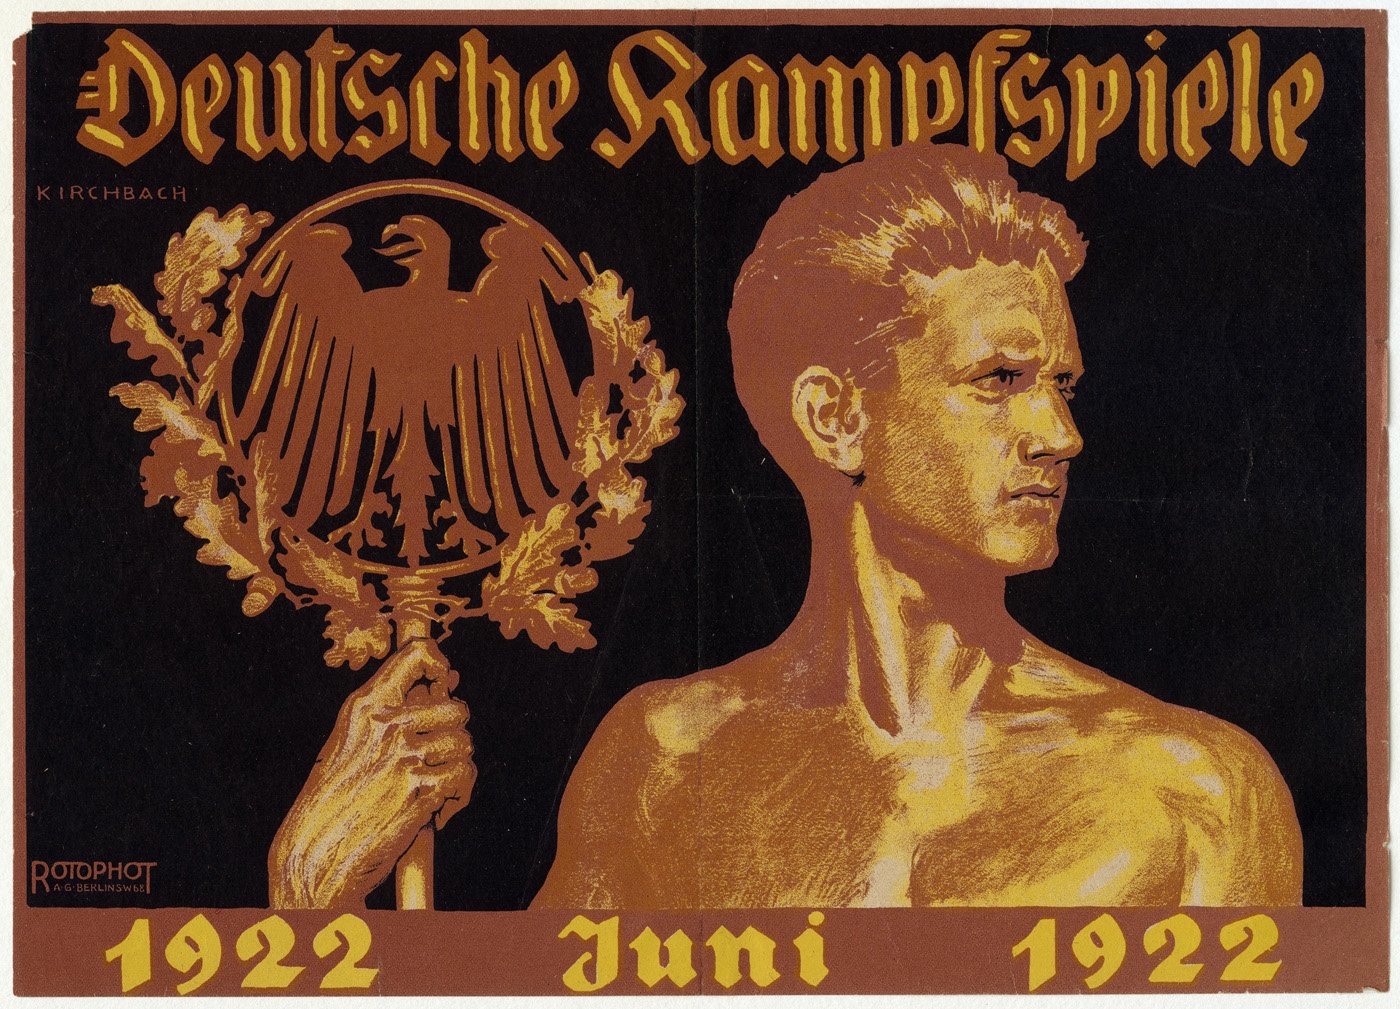 Werbeplakat für die ersten Deutschen Kampfspiele (Sportmuseum Berlin CC0)